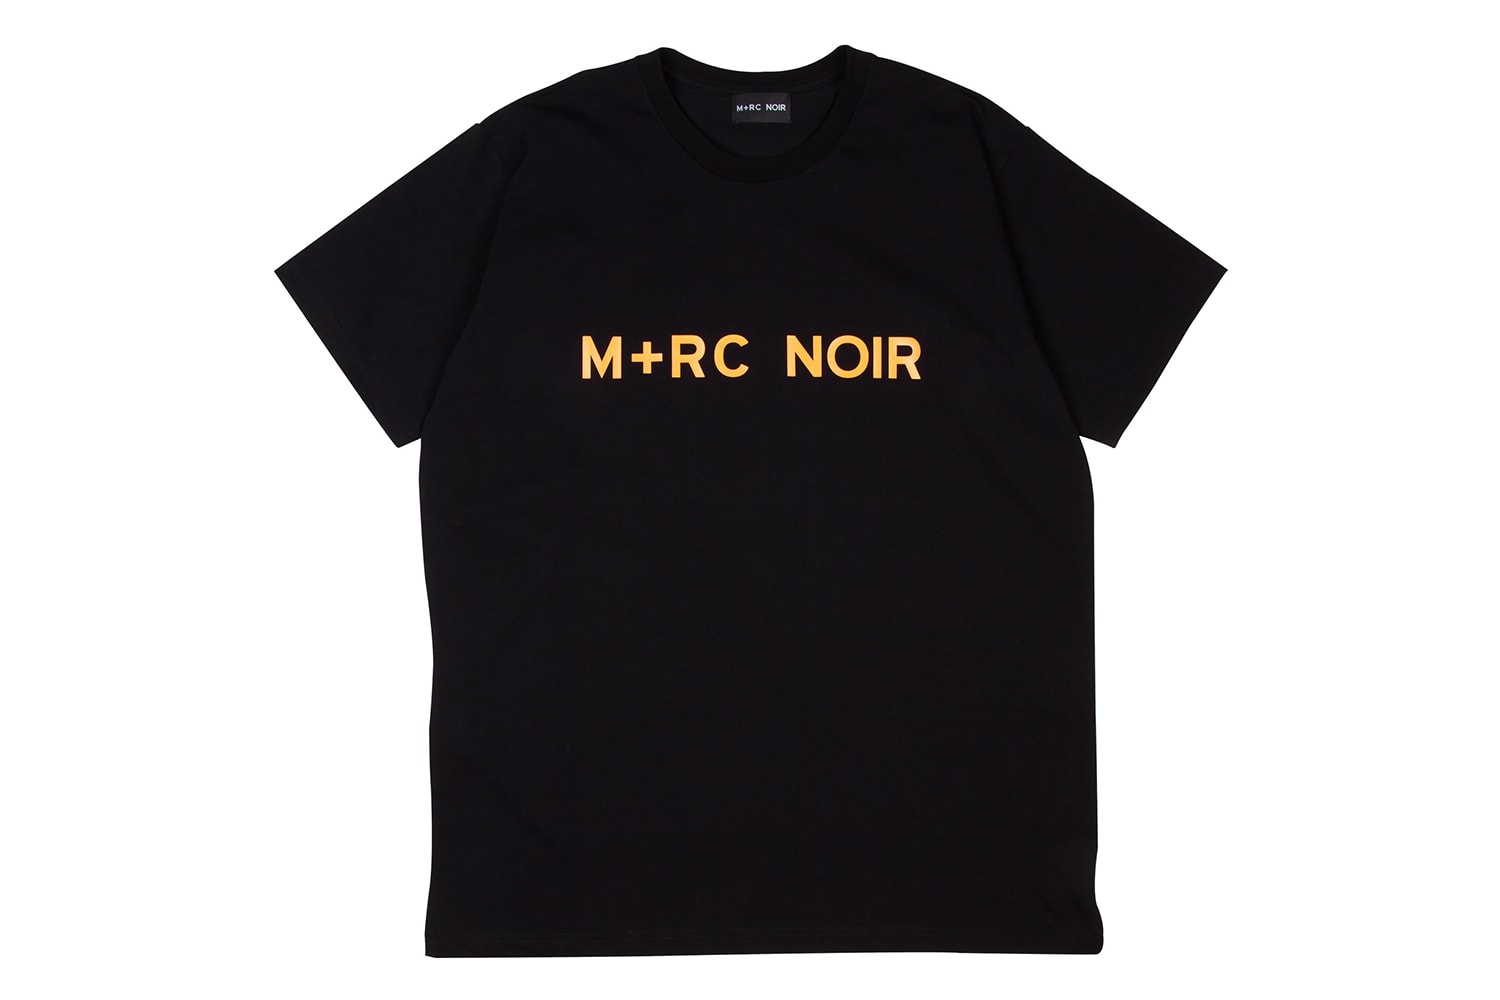 M+RC NOIR Seconde Parie Collection Automne/Hiver 2017 Streetwear